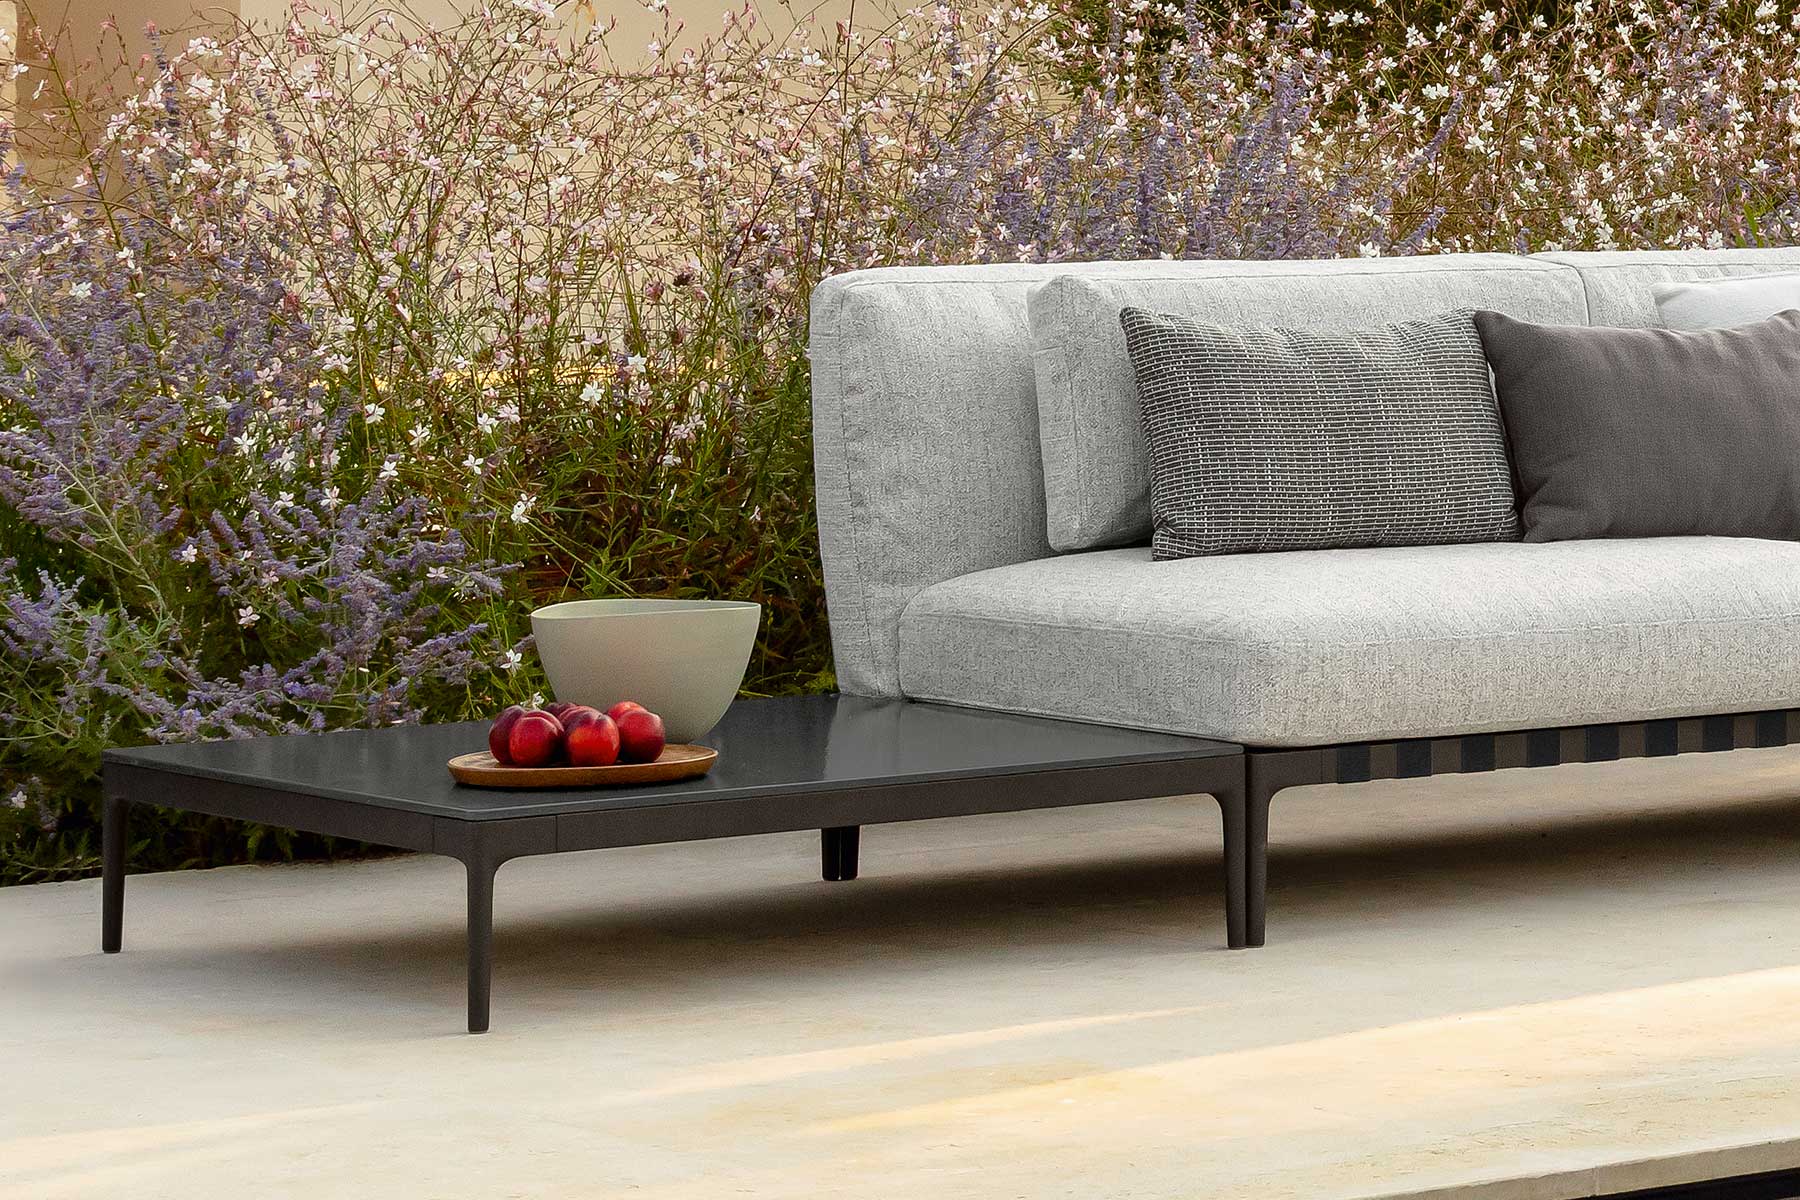 Luxueux canapé de jardin gris et beige, linéaire, modulaire, personnalisable. Meubles de haute qualité en vente en ligne et livraison gratuite à domicile.